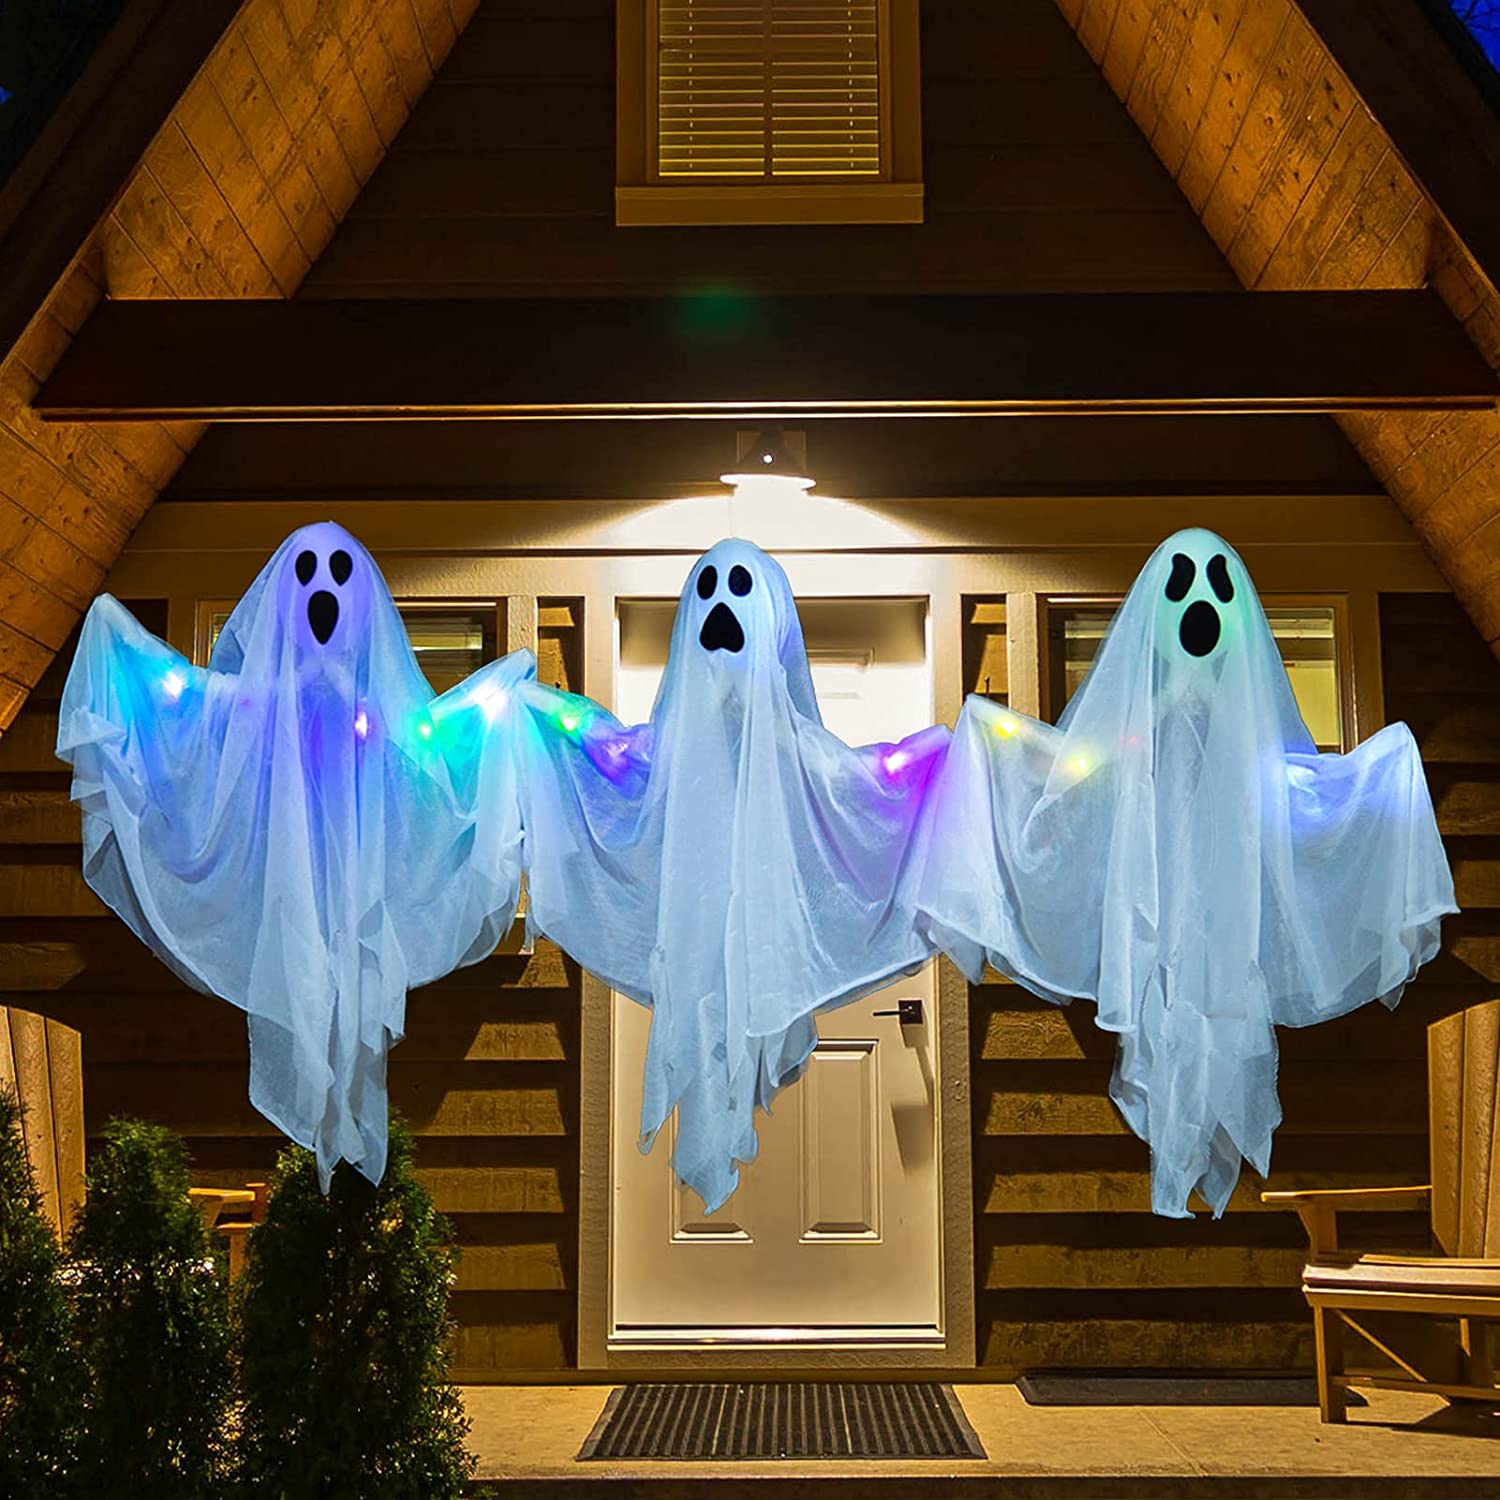 Fantasmi nel cortile - decorazione di Halloween dall'altro lato